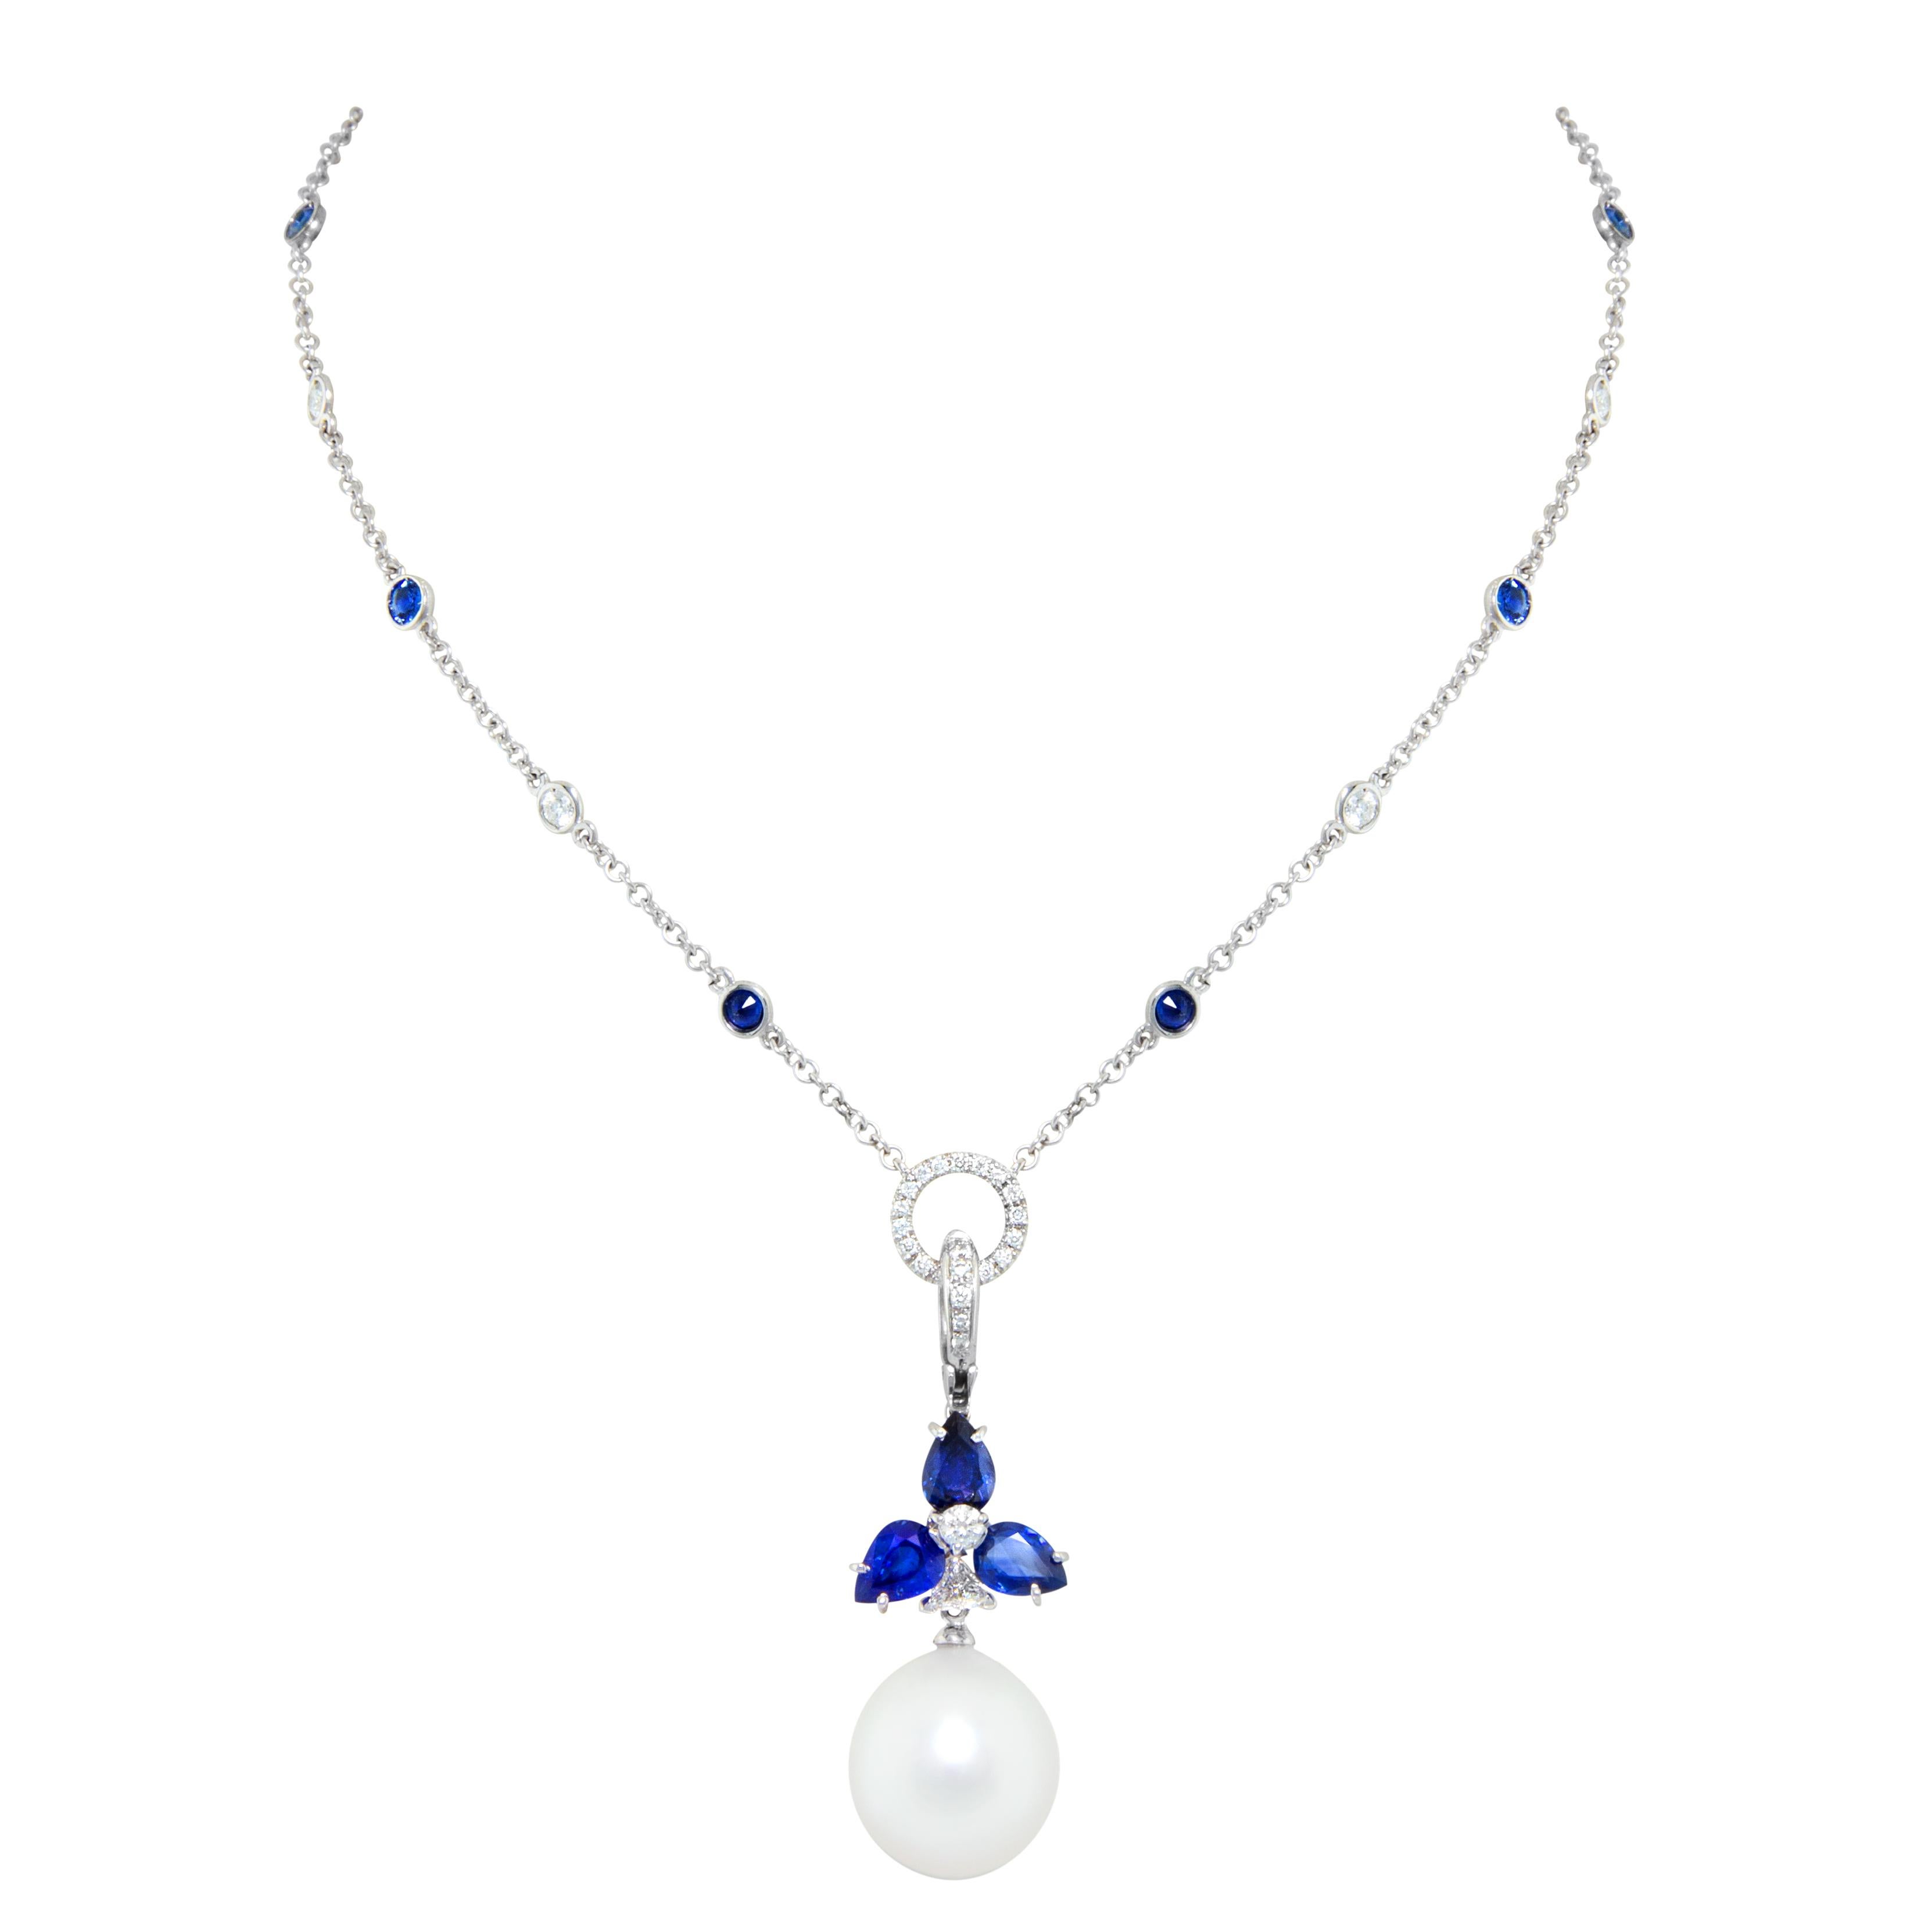 Le pendentif en saphir bleu présente une fleur sertie de 4,20 carats de saphirs bleus facettés en forme de goutte, suspendant une perle lustrée des mers du Sud australiennes de 17 mm de diamètre au moyen d'un diamant taillé en triangle. Le poids